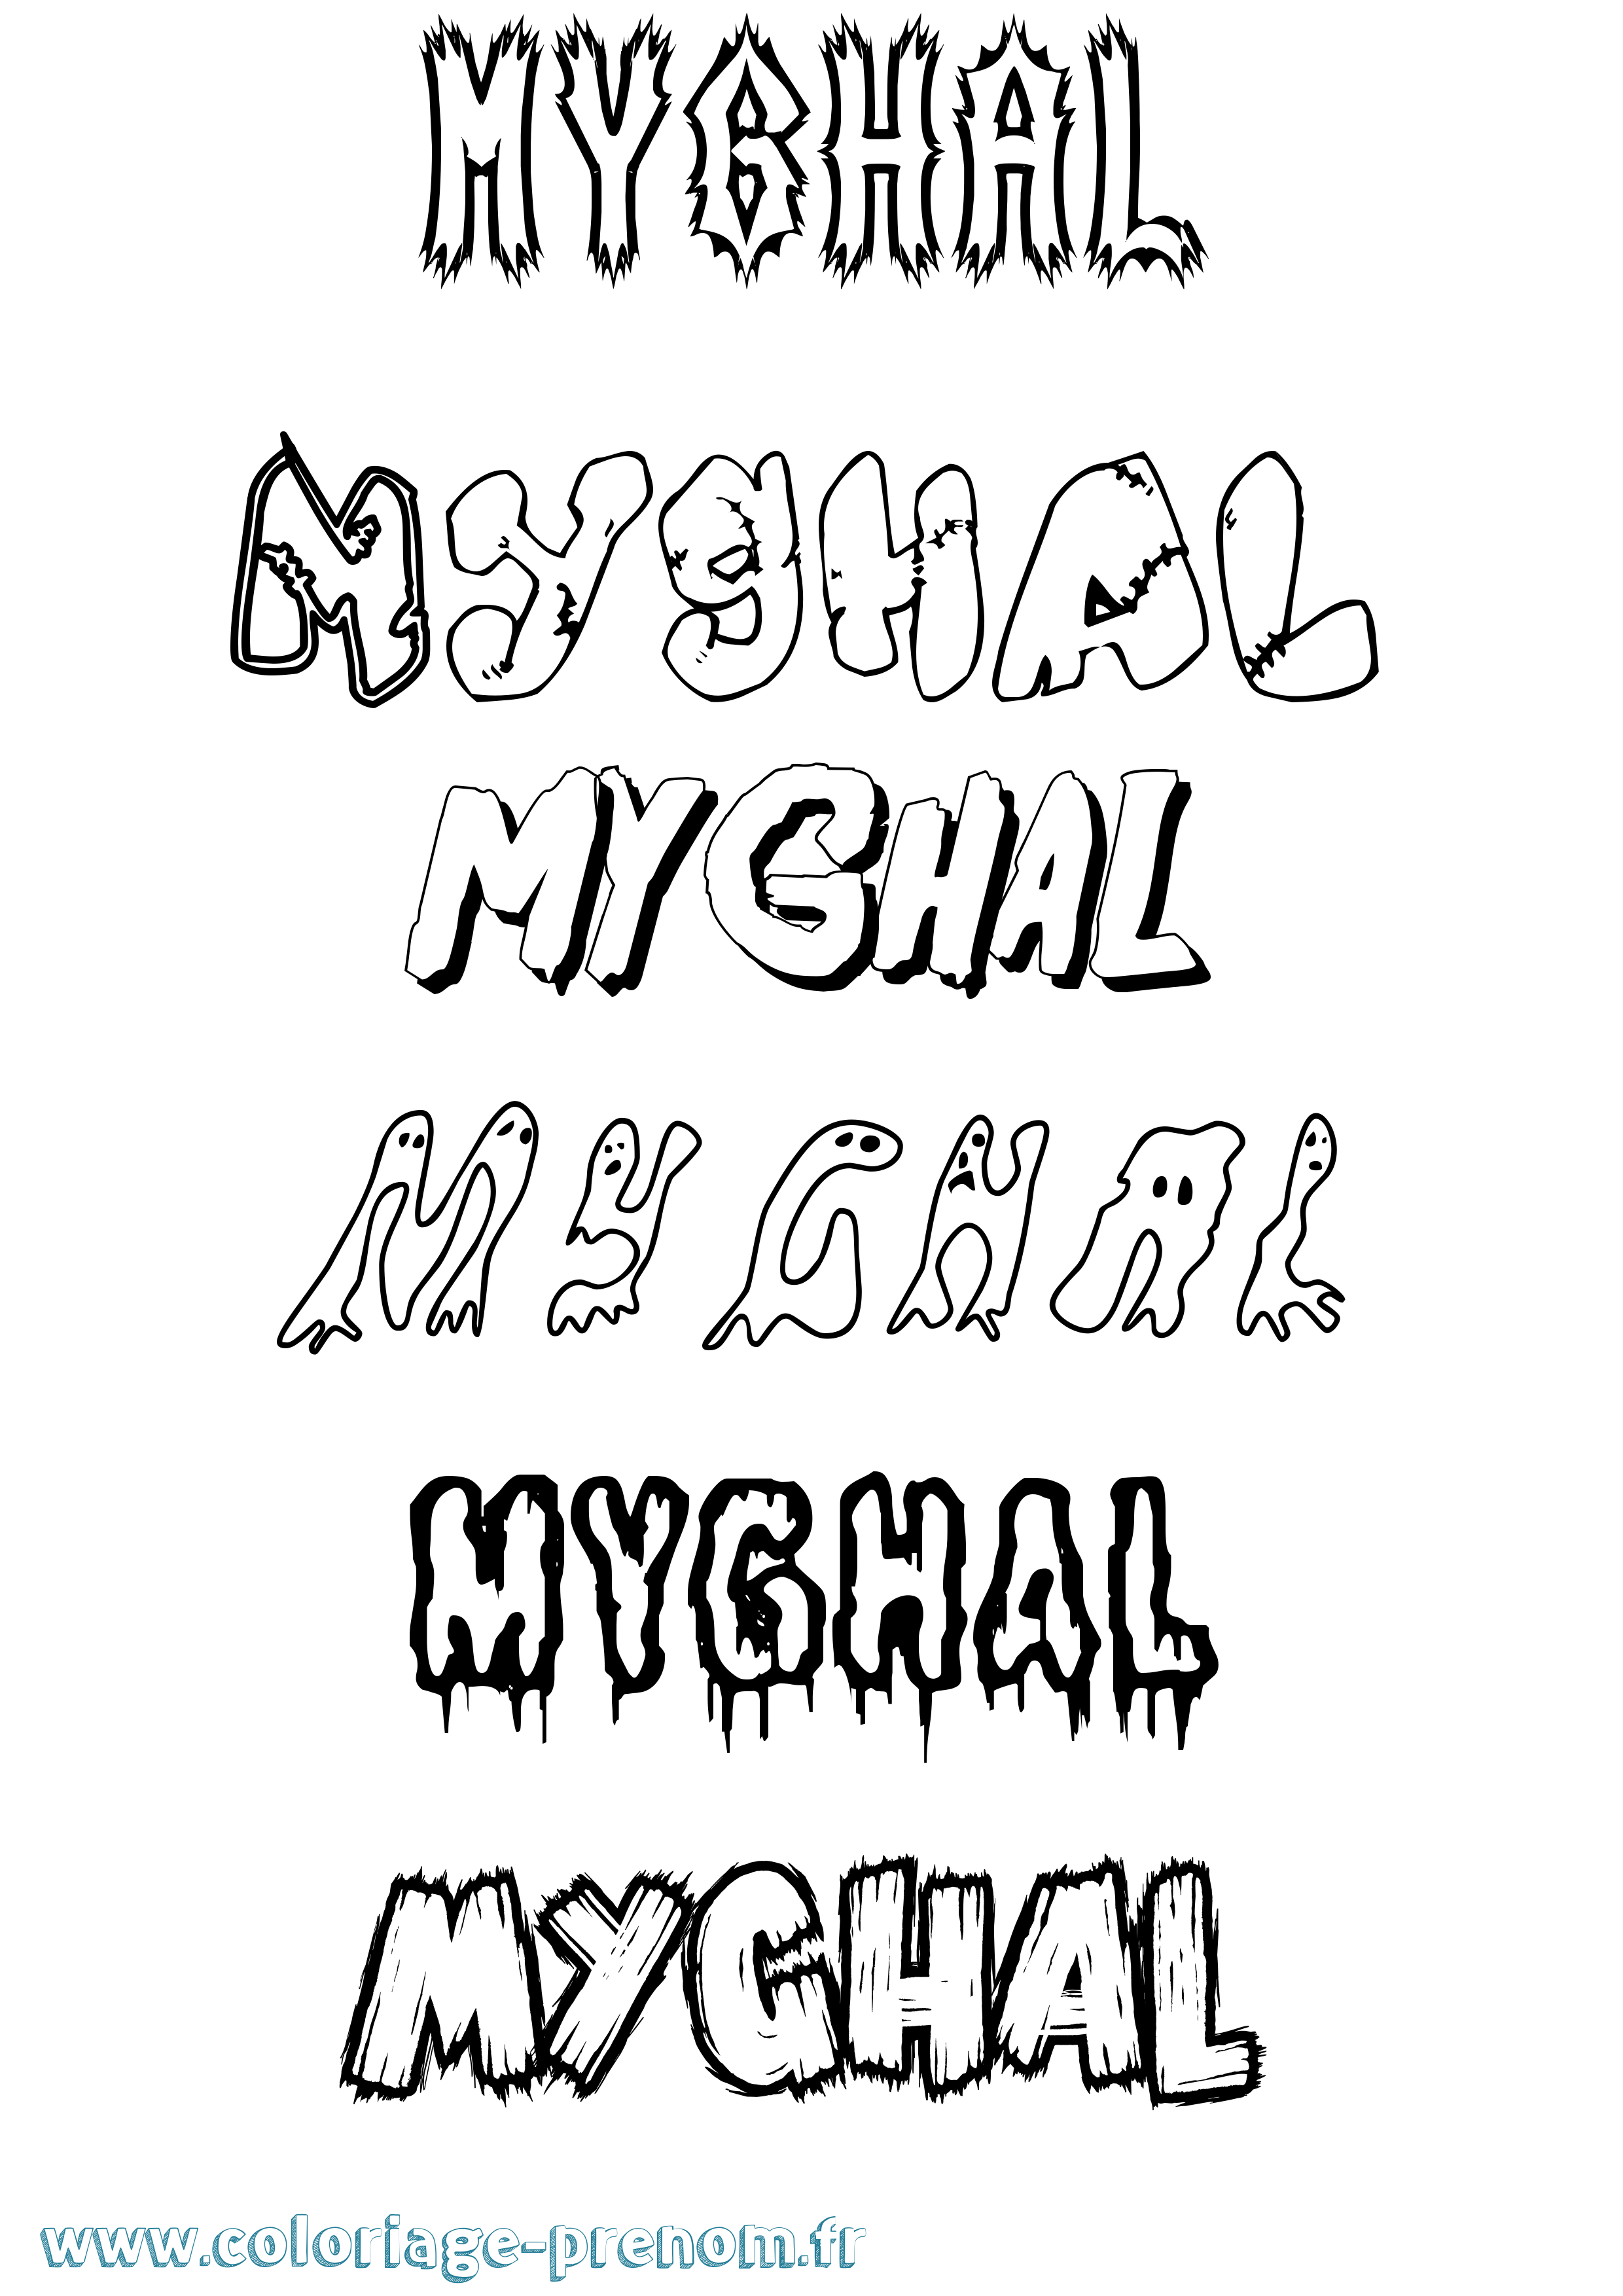 Coloriage prénom Myghal Frisson